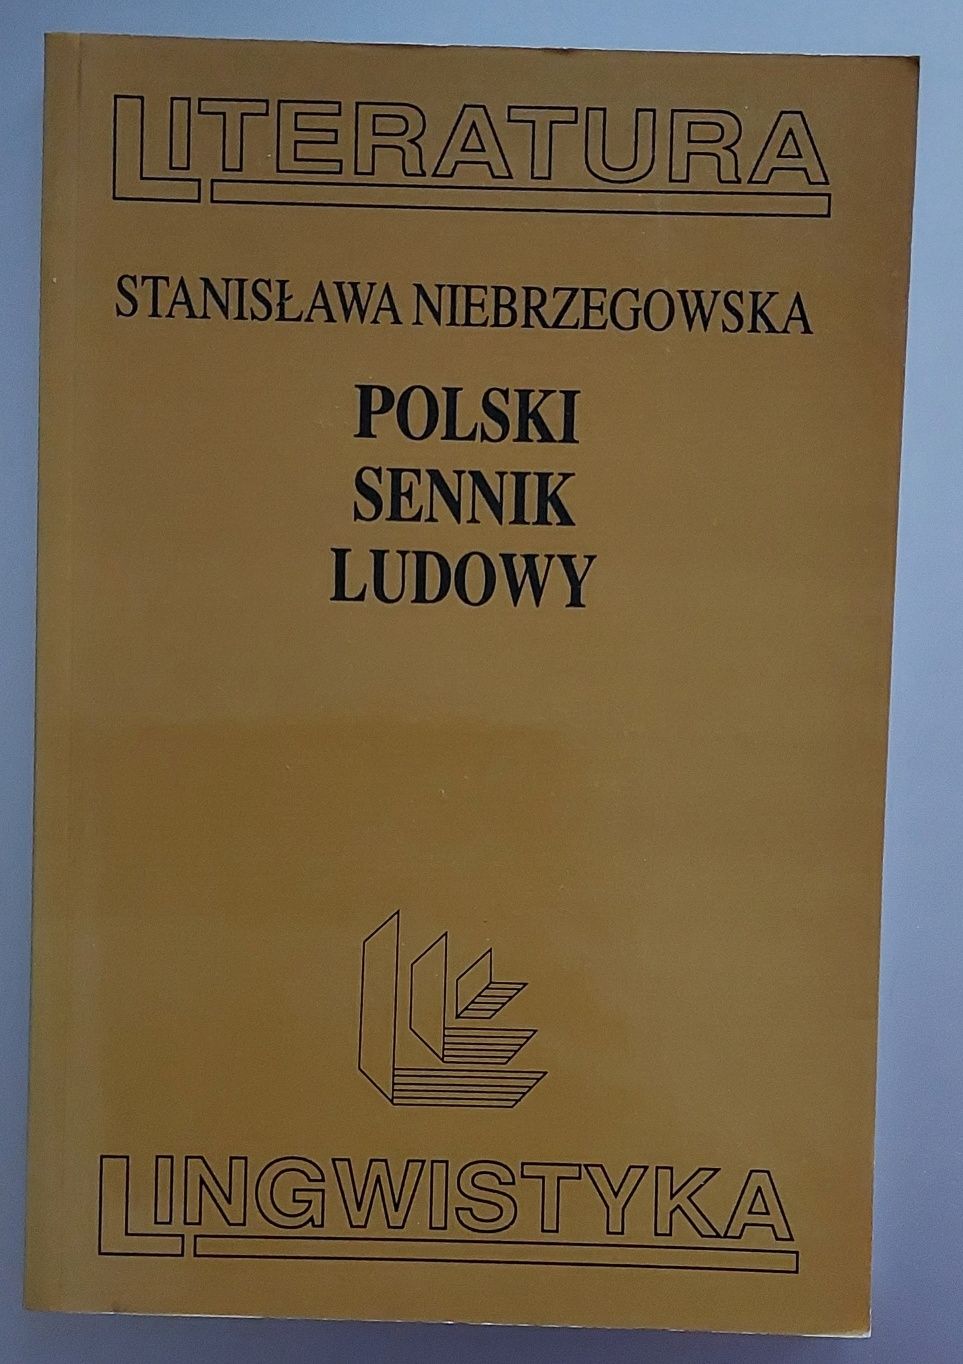 Polski sennik ludowy